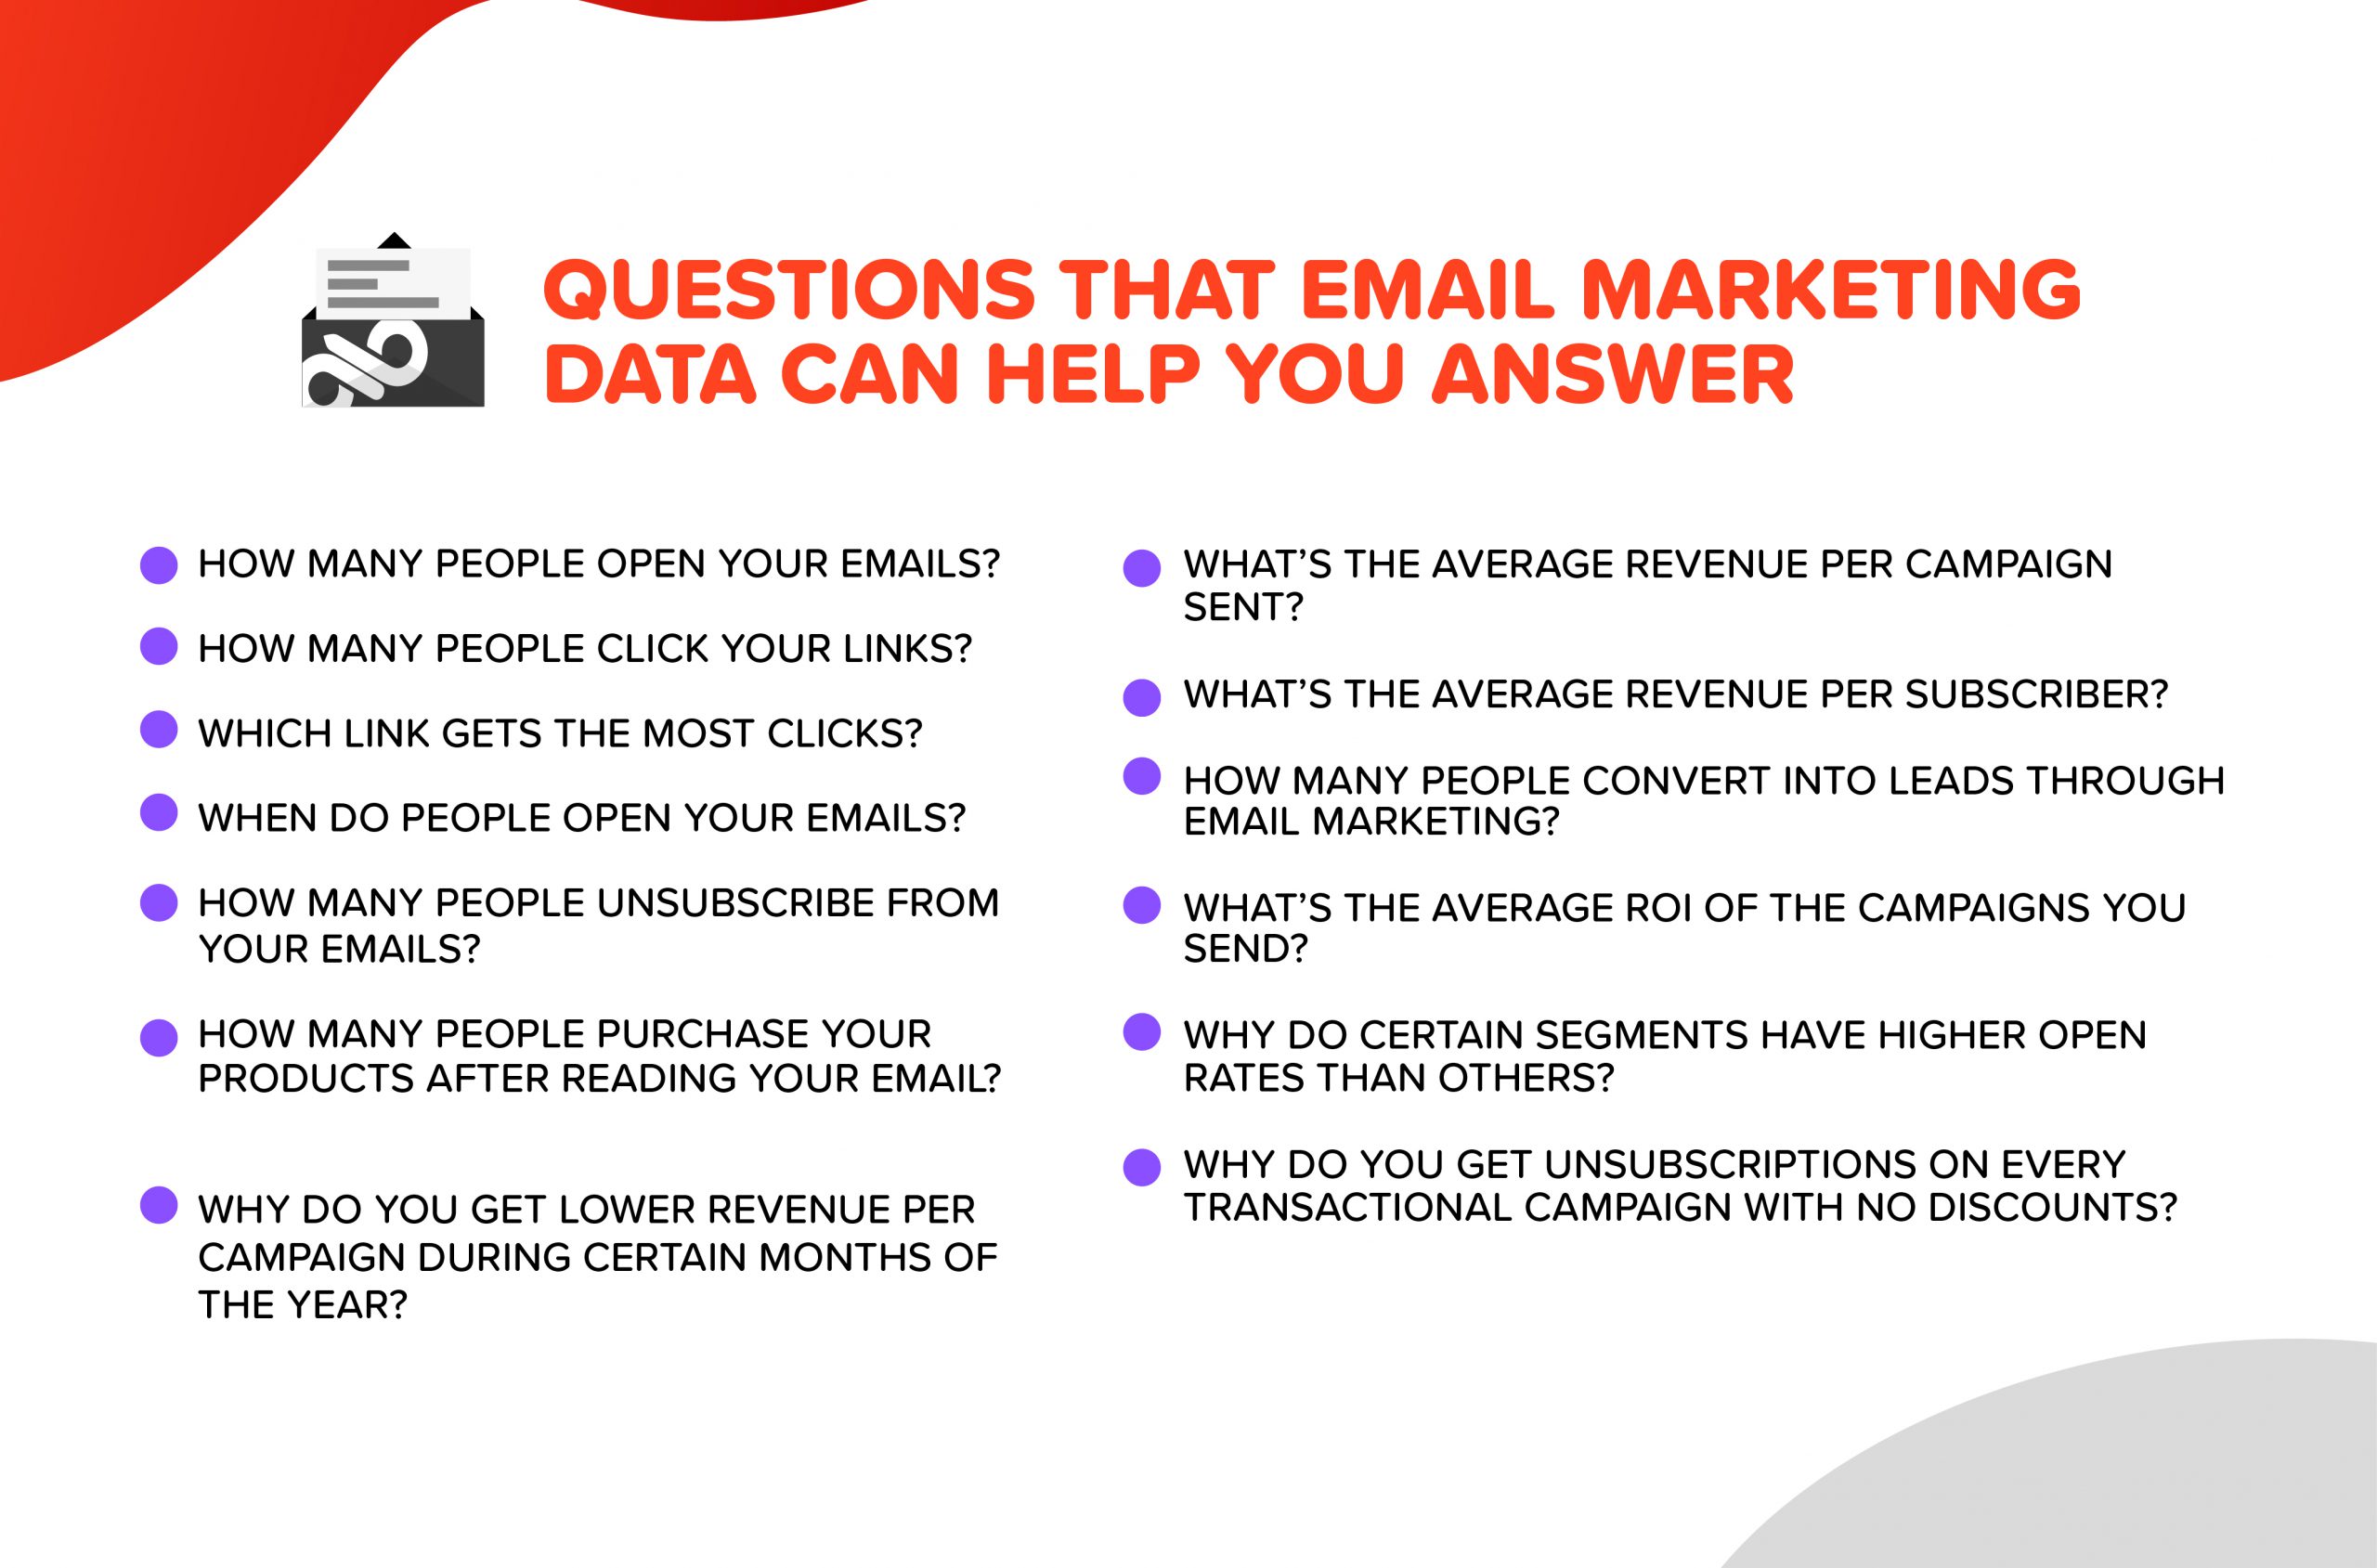 Growth Marketing Agency How to Analyze Email Marketing Data 01 scaled 1